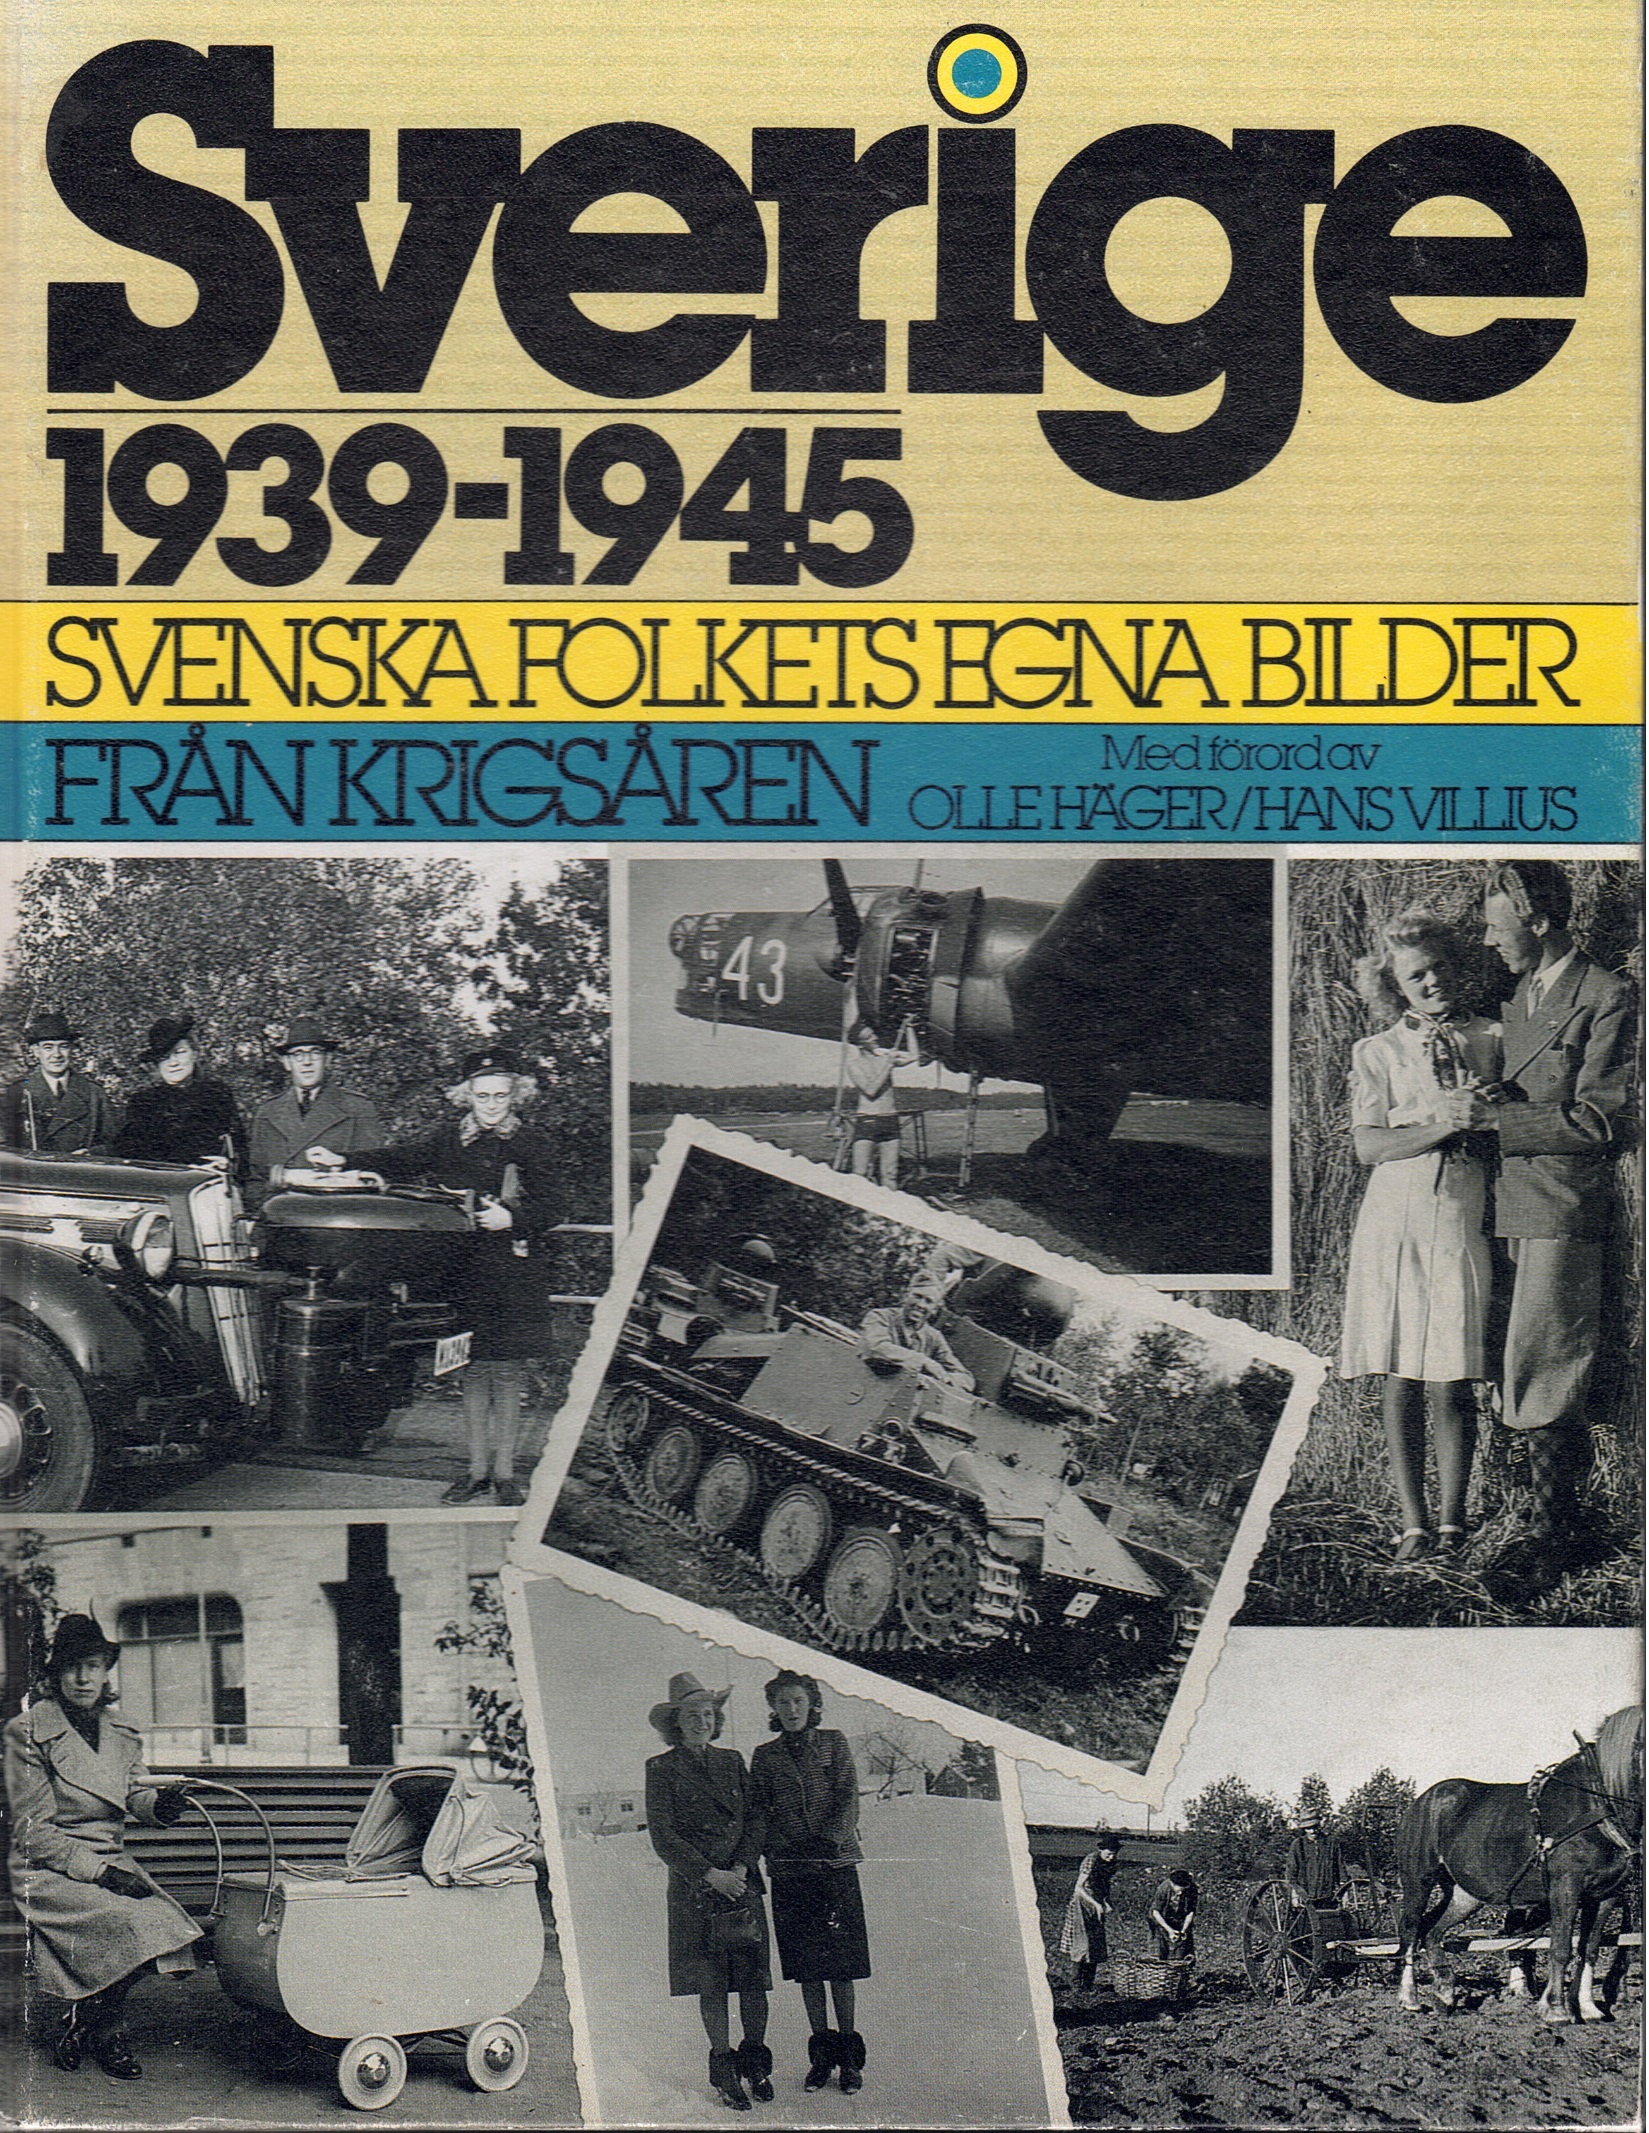 Sverige 19 39-1945: svenska folkets egna bilder från krigsåren - Jakobsson, Jakob och Janson, Erik